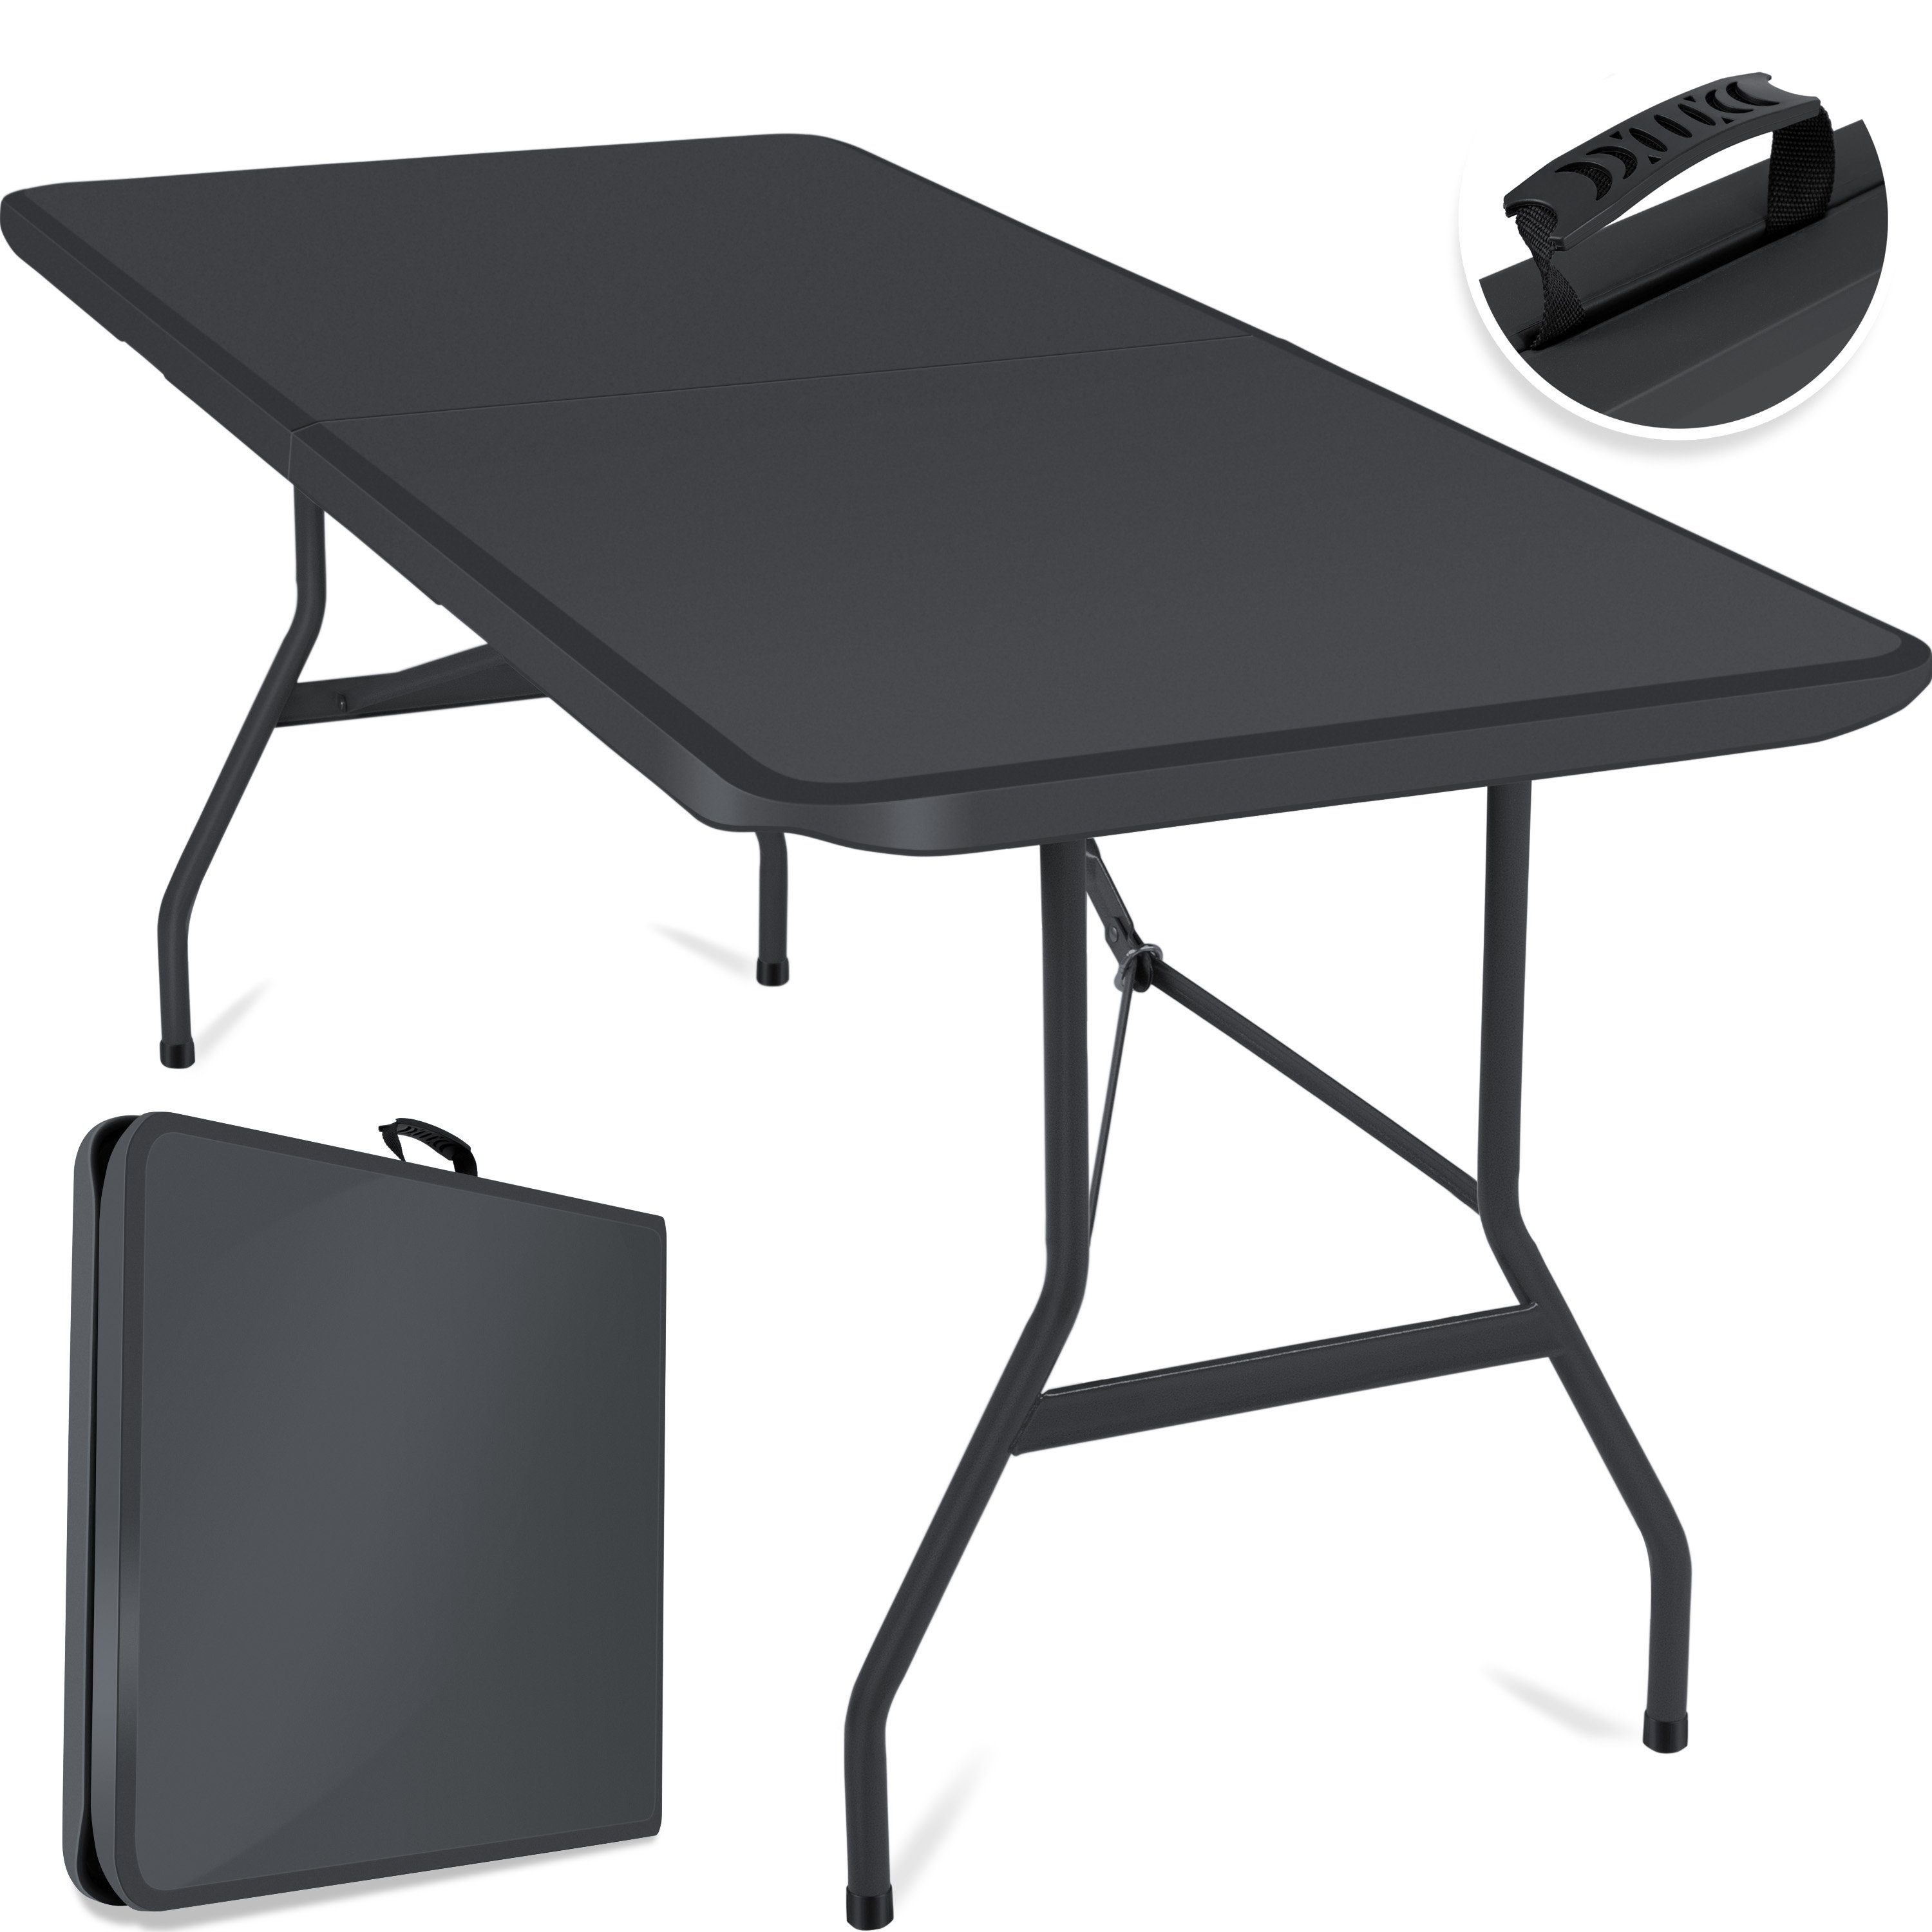 KESSER Tabletttisch, Buffettisch Tisch klappbar Kunststoff 183x76 cm Campingtisch anthrazit